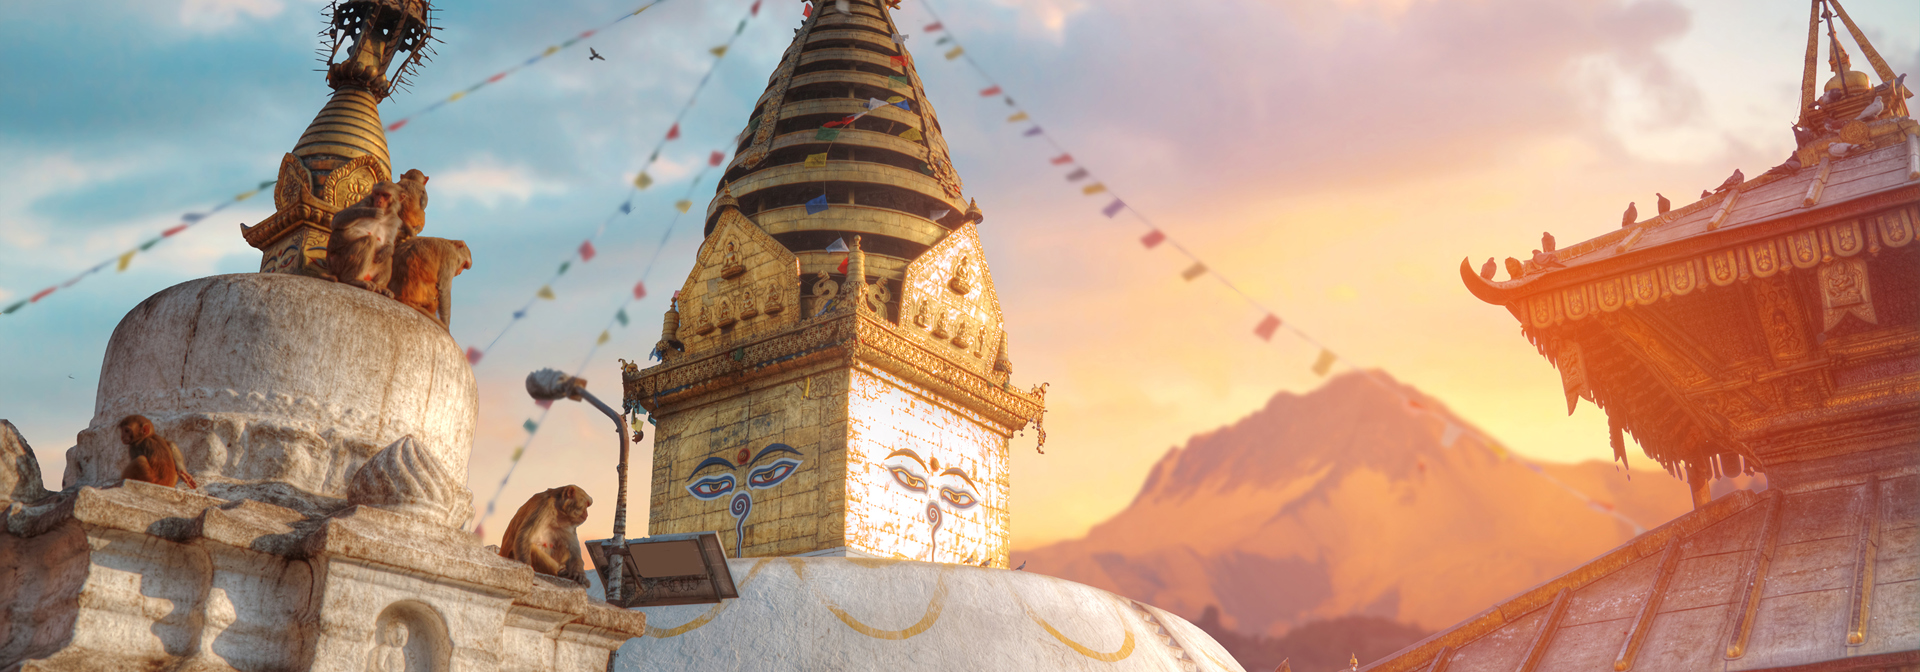 nepal - kathmandu_swayambhunath_01